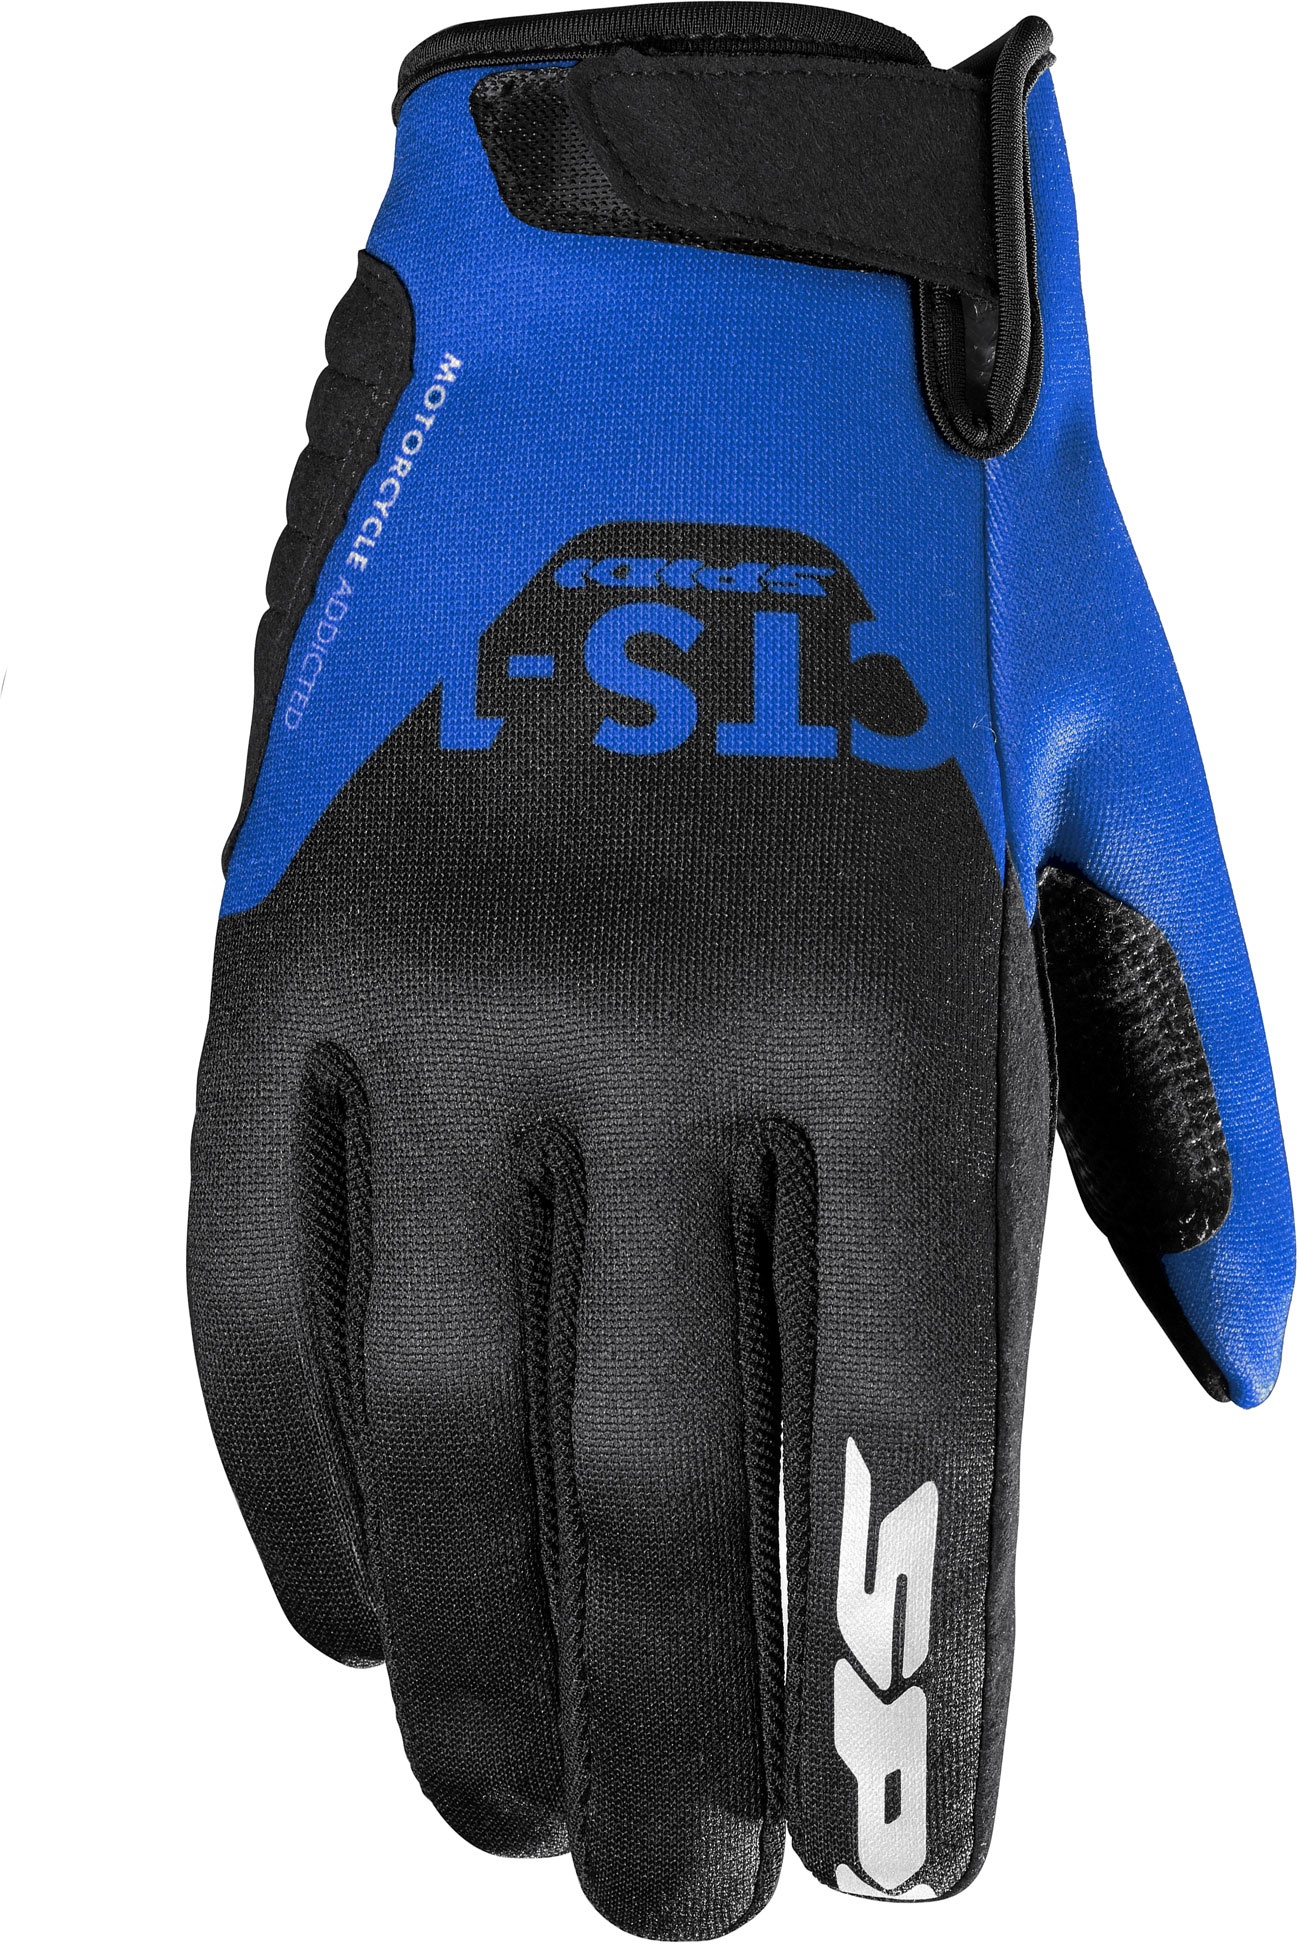 Spidi CTS-1, gants - Noir/Bleu - XL